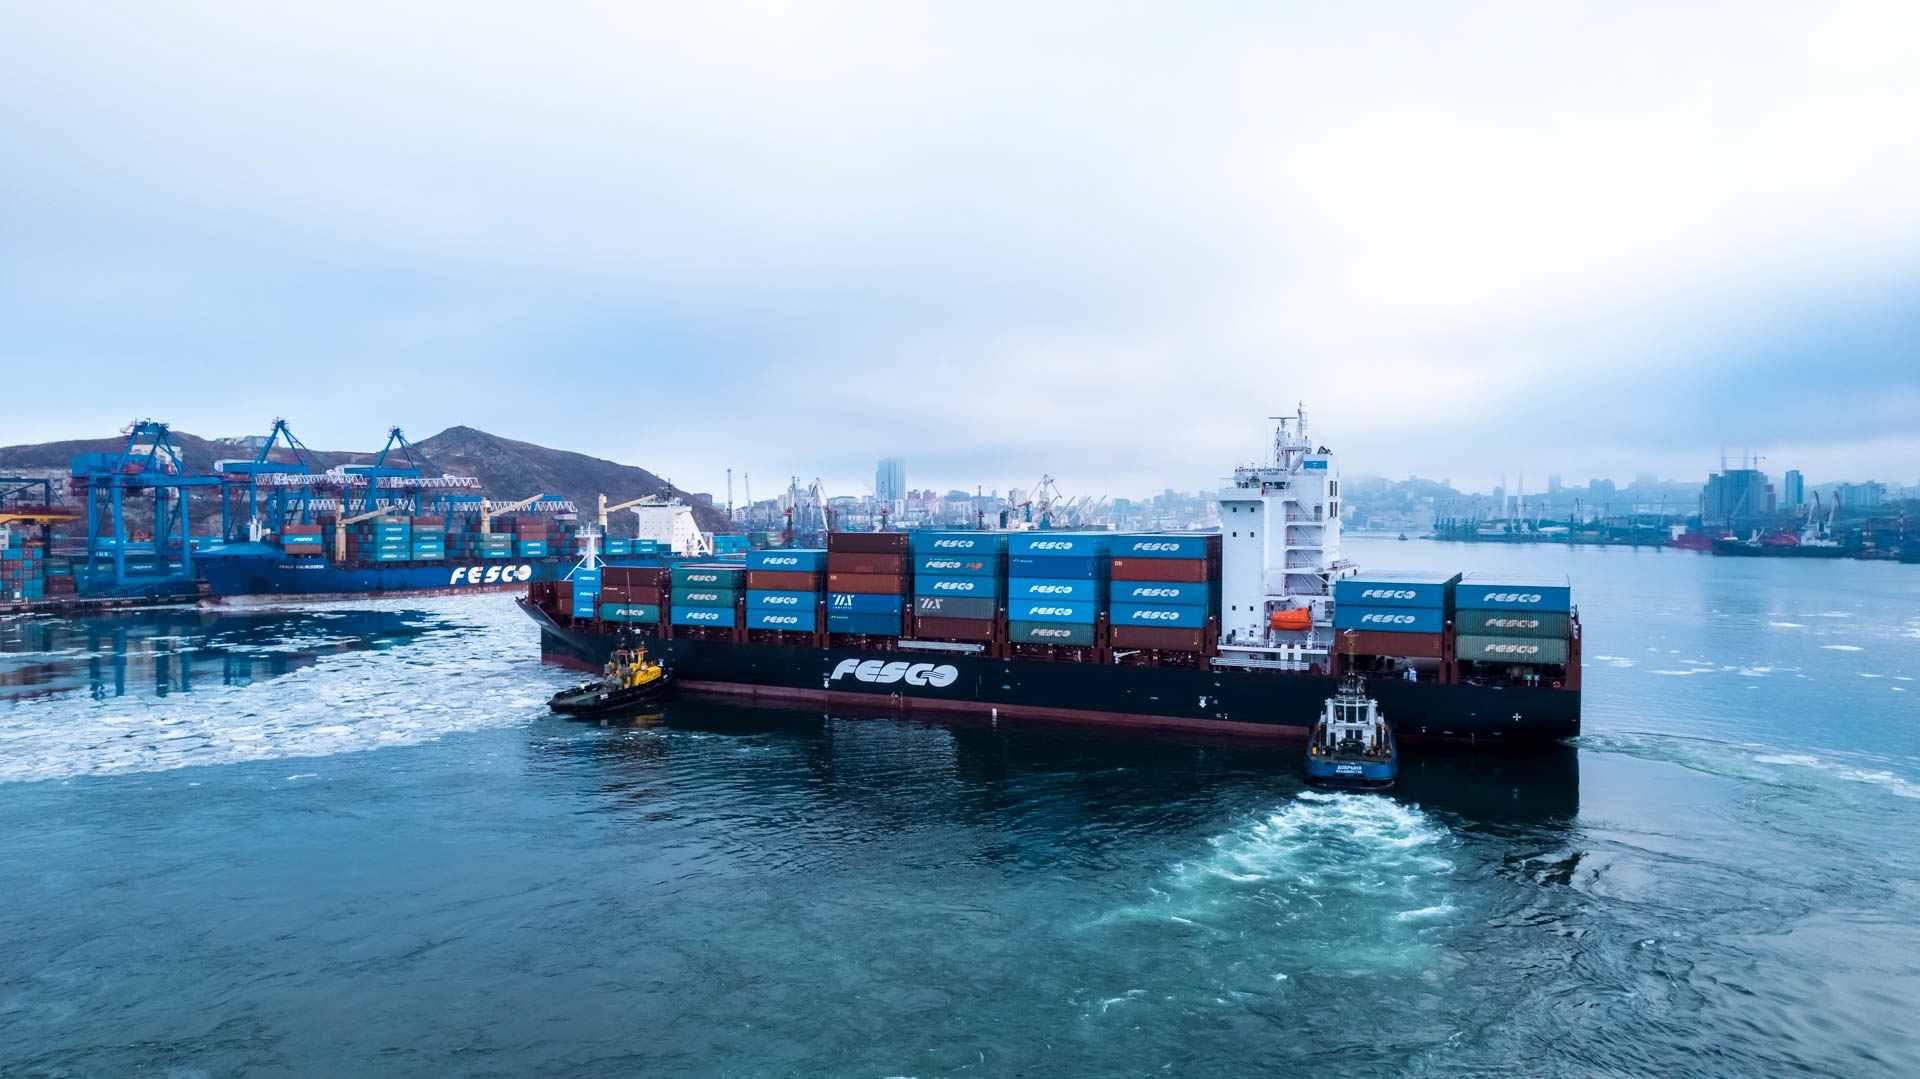 FESCO поднялась на 33 место среди крупнейших контейнерных судоходных компаний мира